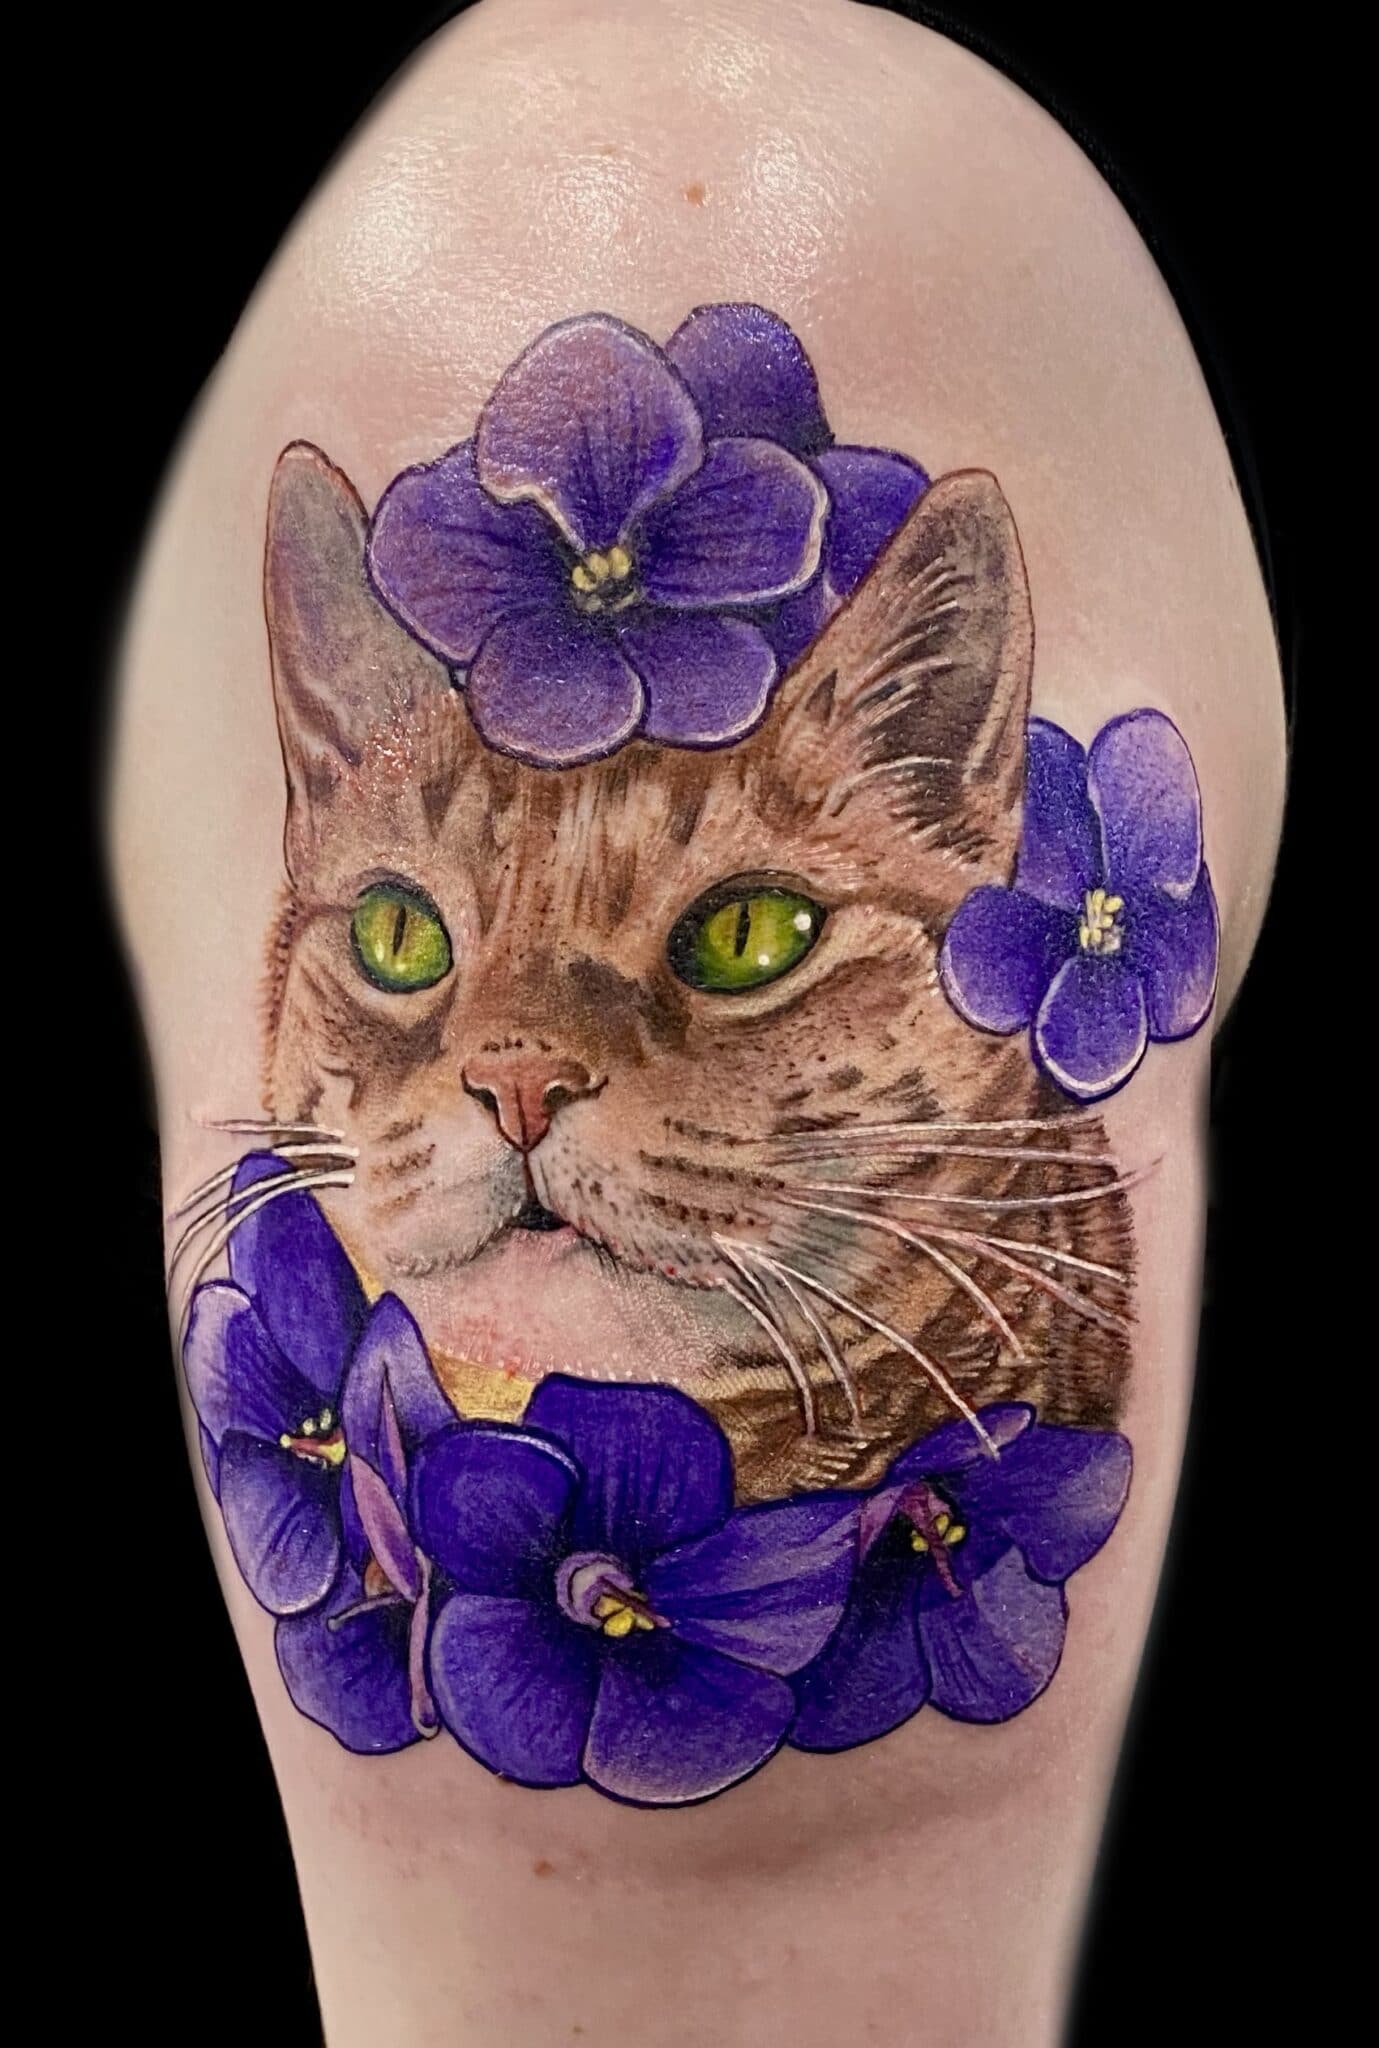 Tattoo by Krystof, Artist at Revolt Tattoos